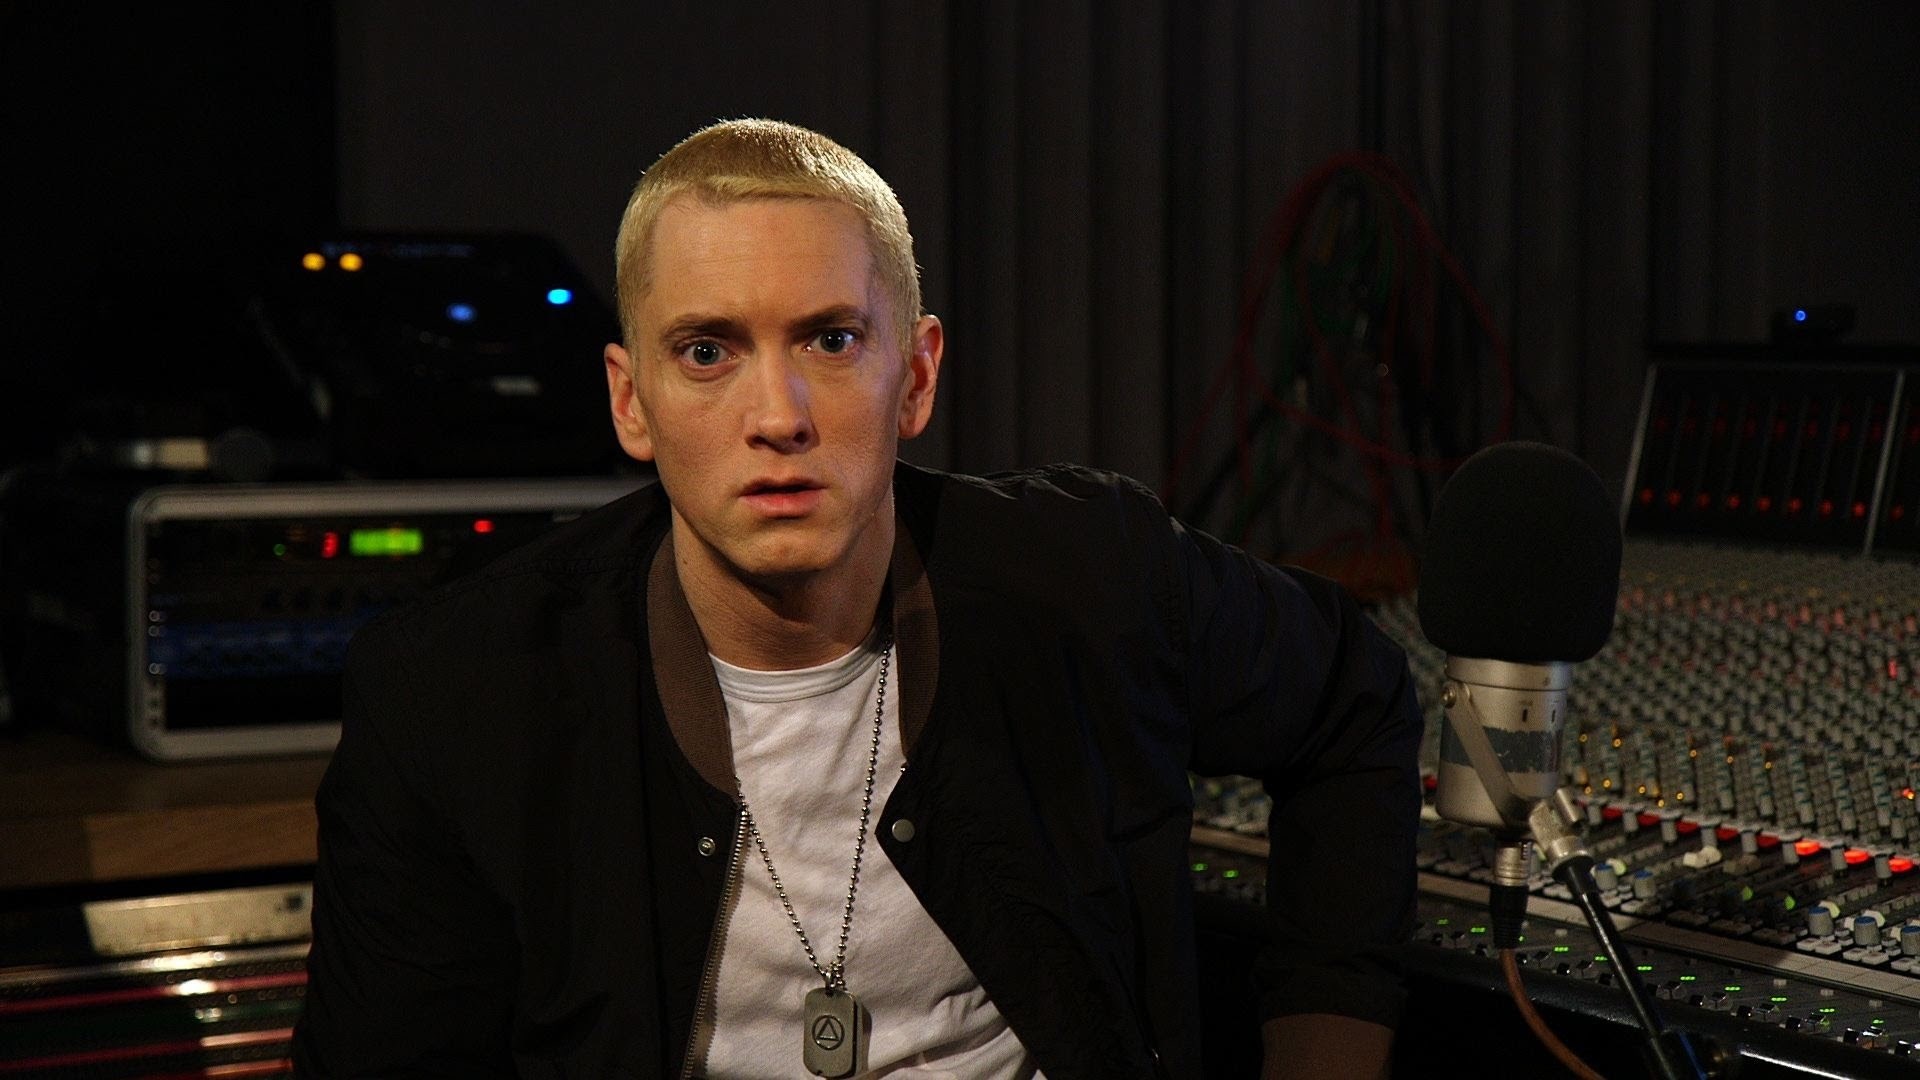 Eminem Zane Lowe , HD Wallpaper & Backgrounds